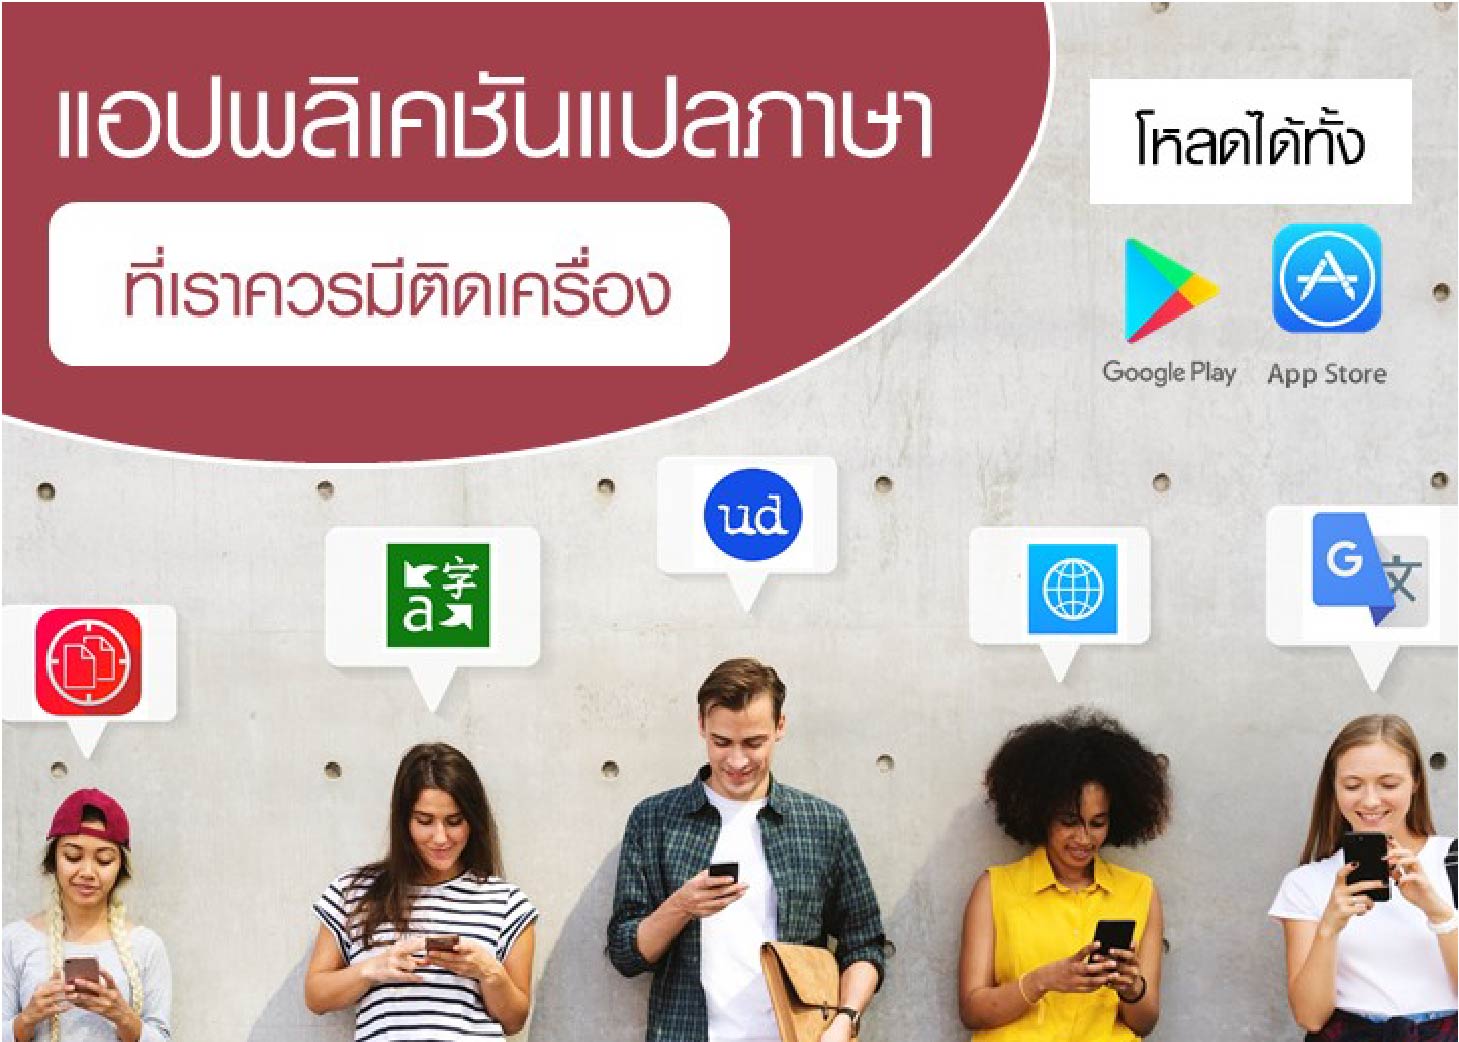 แอปพลิเคชันแปลภาษา ที่เราควรมีติดเครื่อง | Manpower Thailand